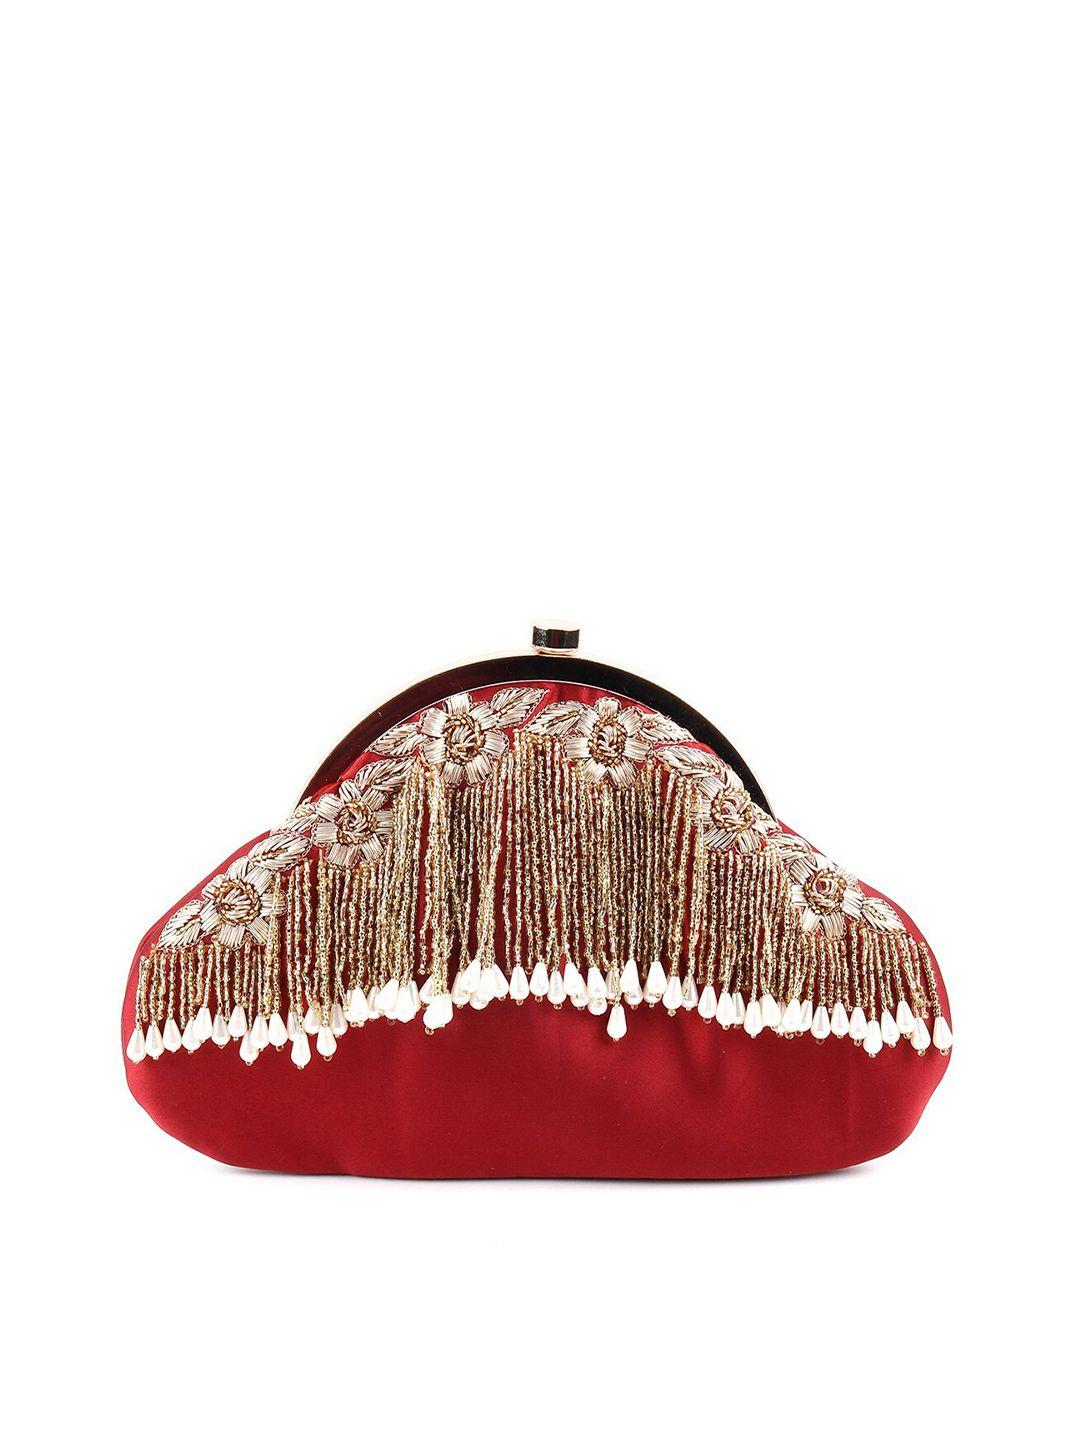 odette red & gold-toned embellished purse clutch